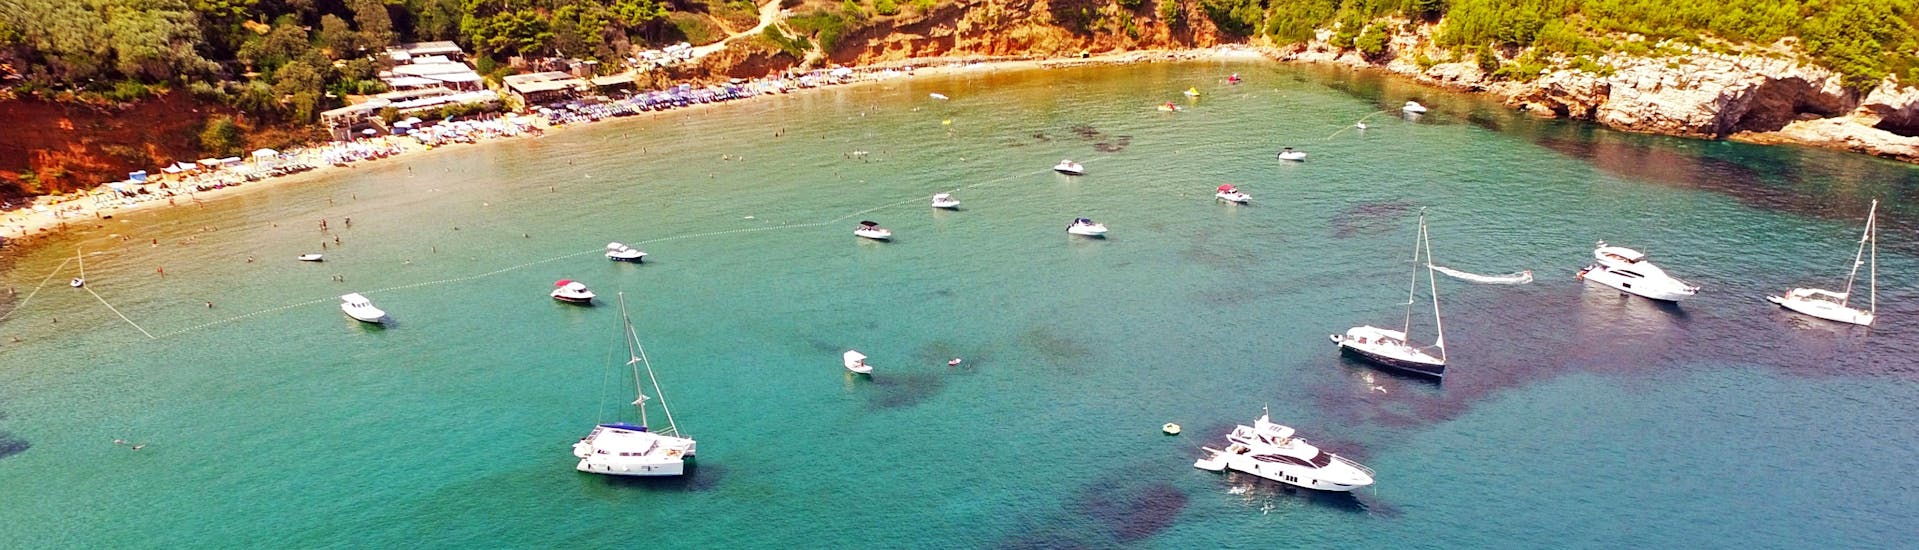 Vista della baia durante il tour privato in barca di un'intera giornata da Dubrovnik alle Isole Elafiti organizzato da Snooky Tours Dubrovnik.